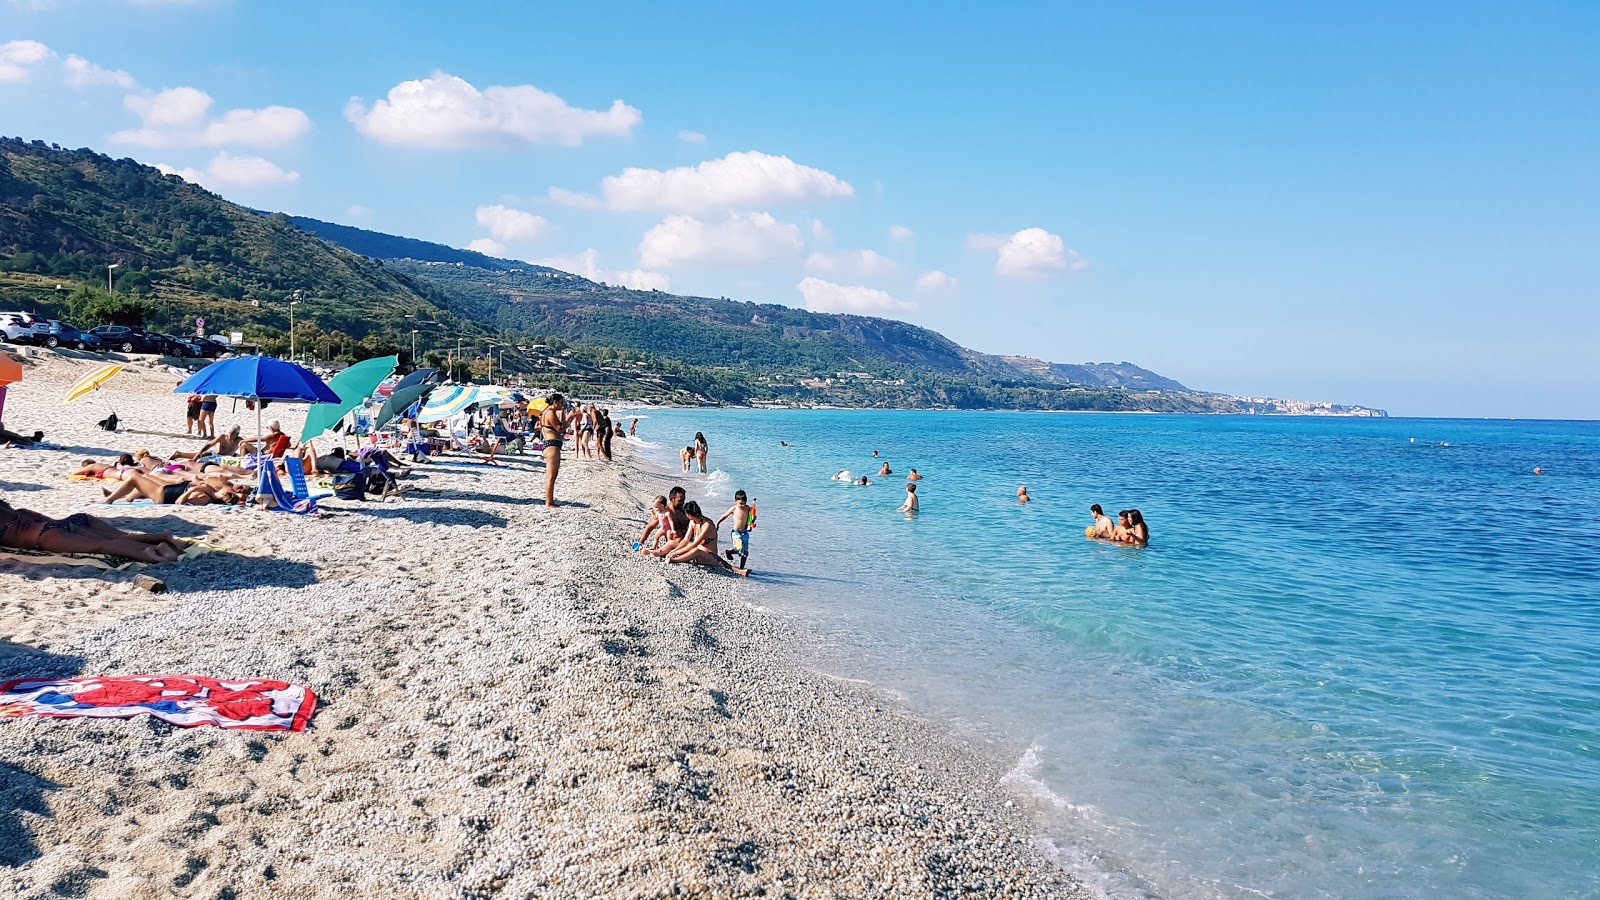 Spiaggia Libera Di Zambrone'in fotoğrafı hafif ince çakıl taş yüzey ile